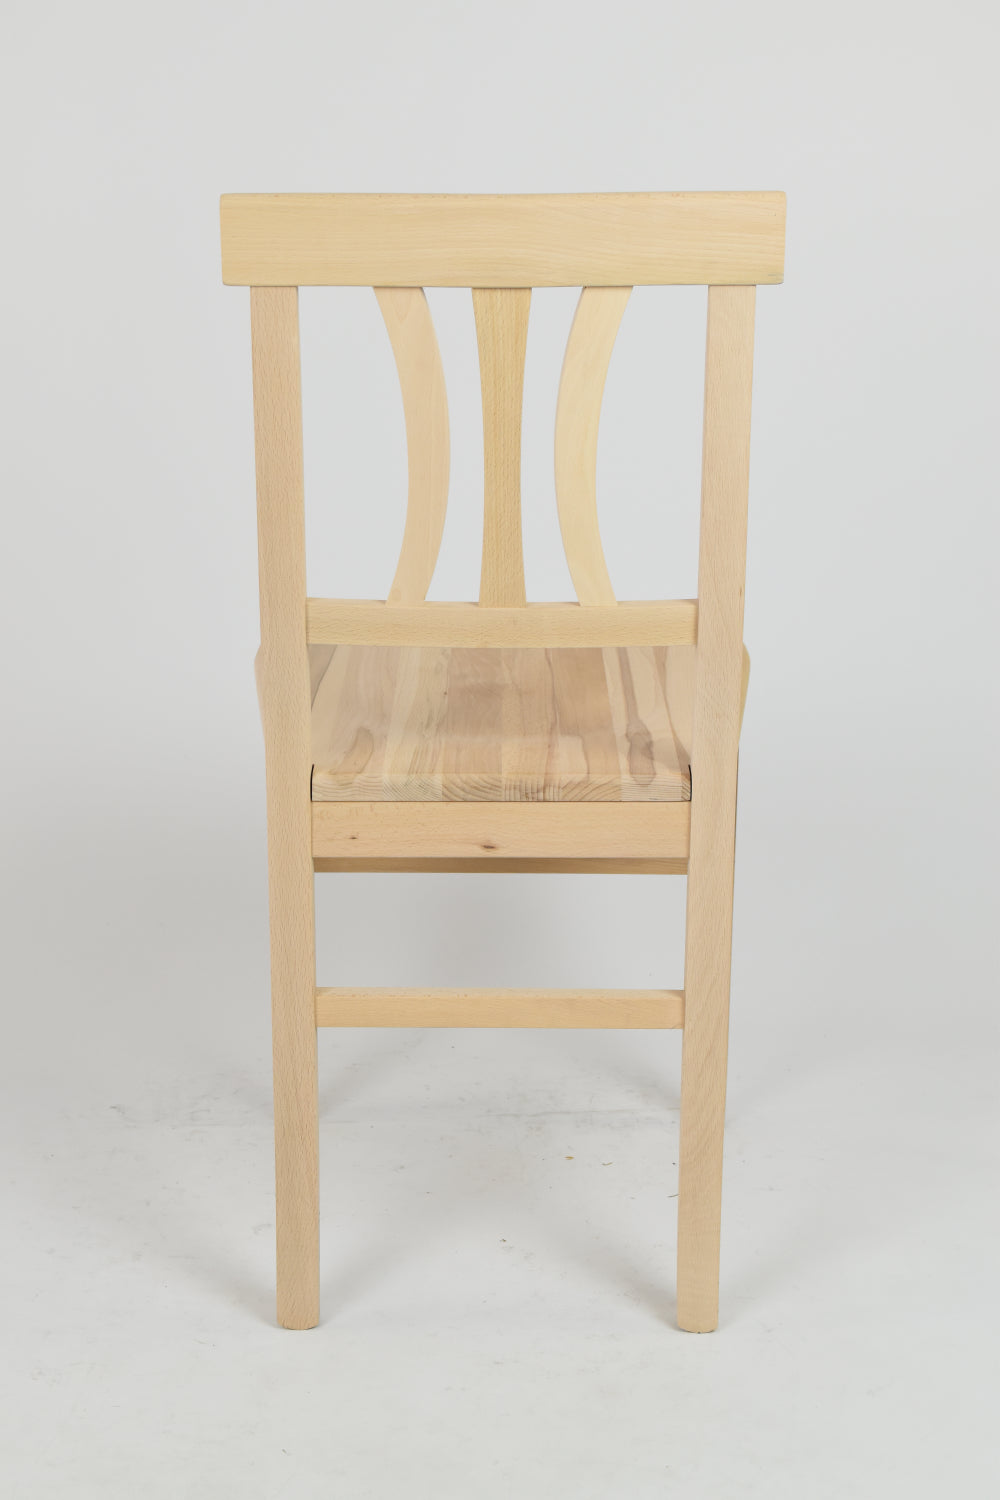 Tommychairs - Set 4 sillas de Cocina y Comedor Artemisia, Estructura en Madera de Haya lijada, no tratada, 100% Natural y Asiento en Madera